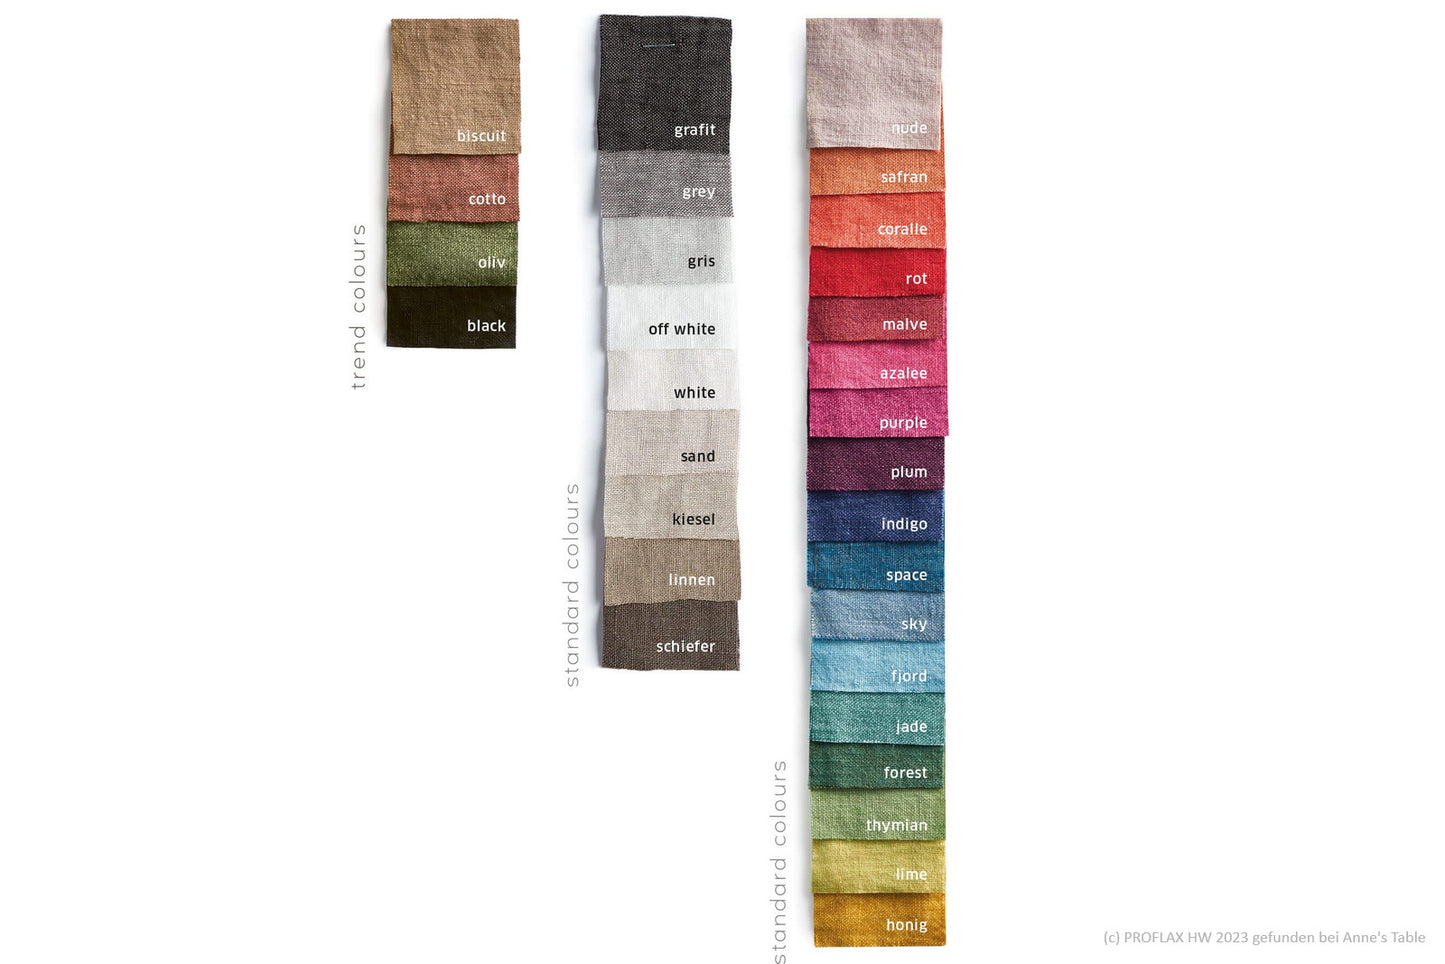 Proflax Leinen, Tischdecke 150x250cm, Uni-Leinen im washed Look - in vielen Farben